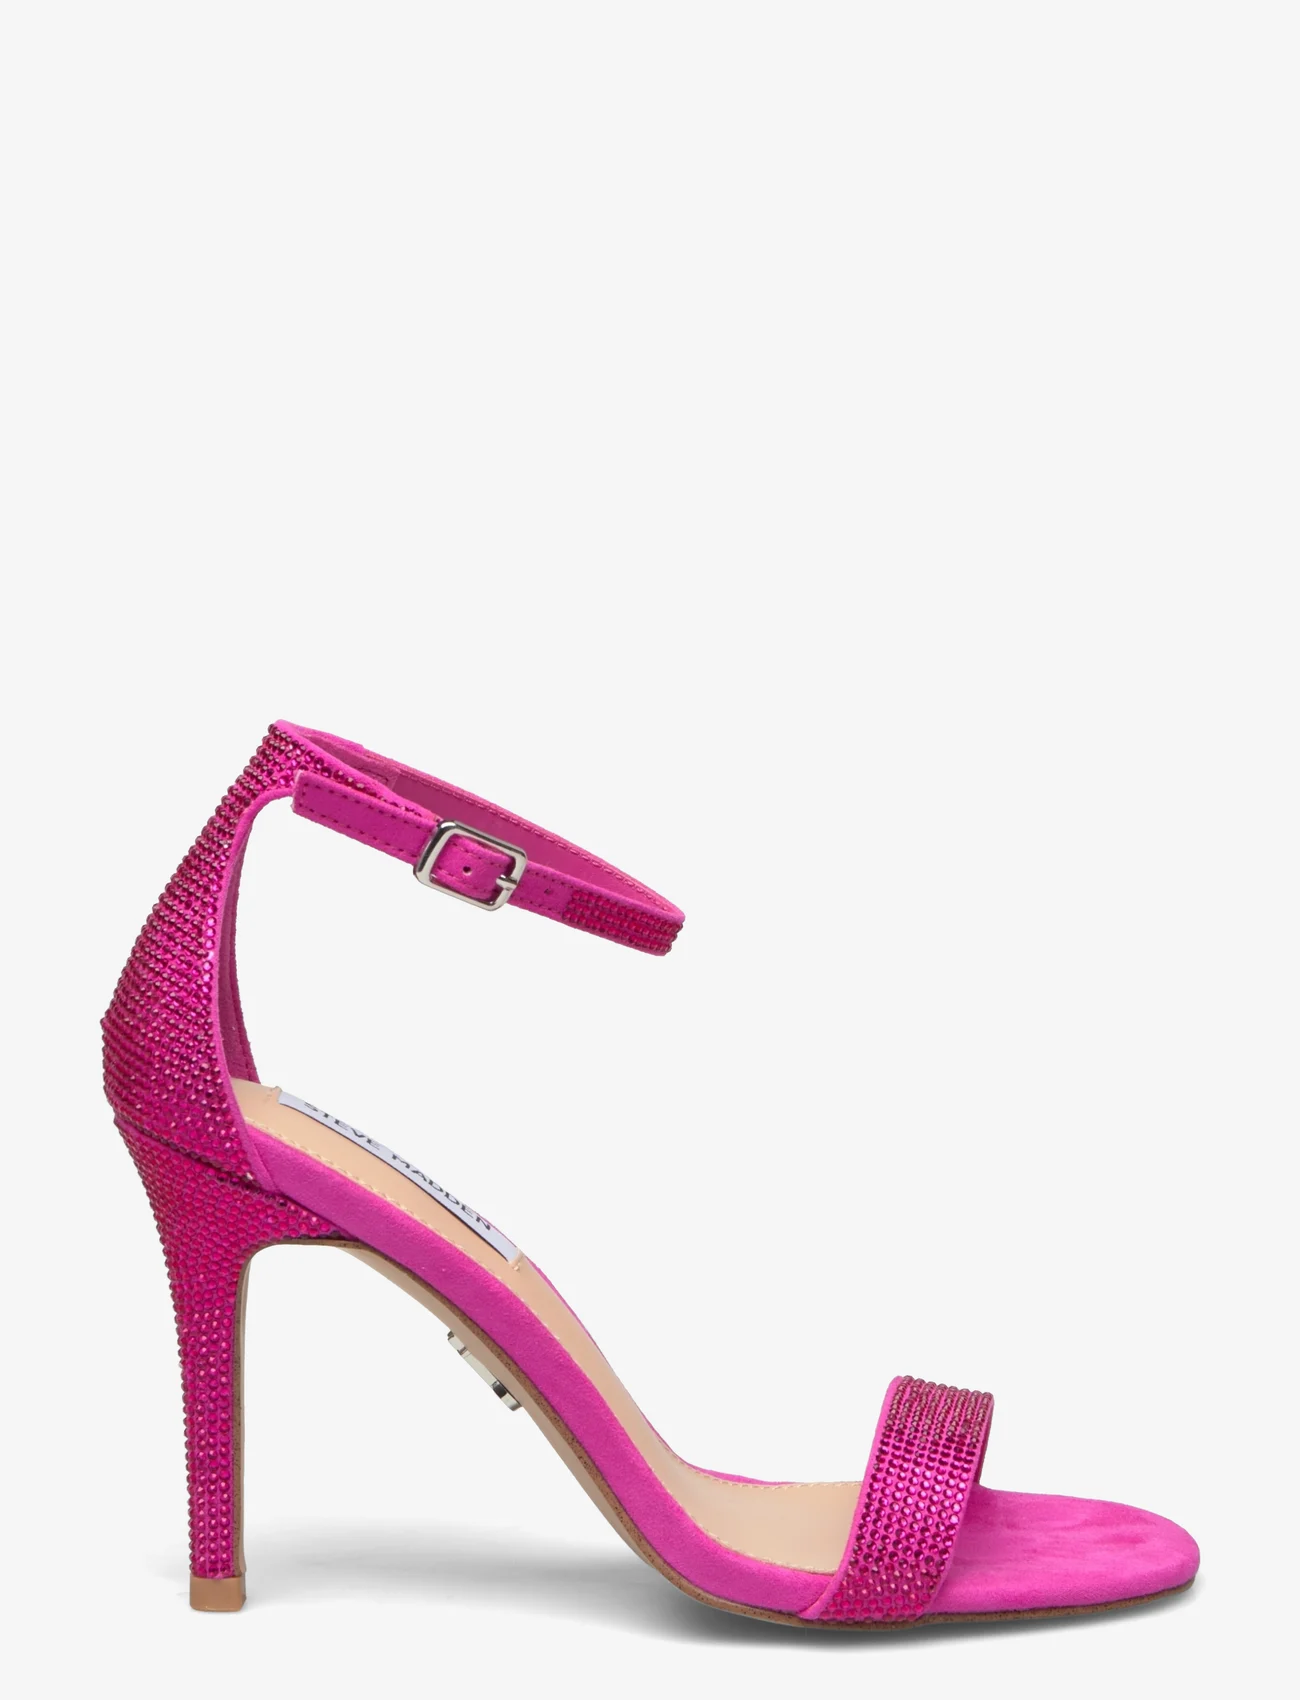 Steve Madden - Illumine-R Sandal - festtøj til outletpriser - hot pink - 1